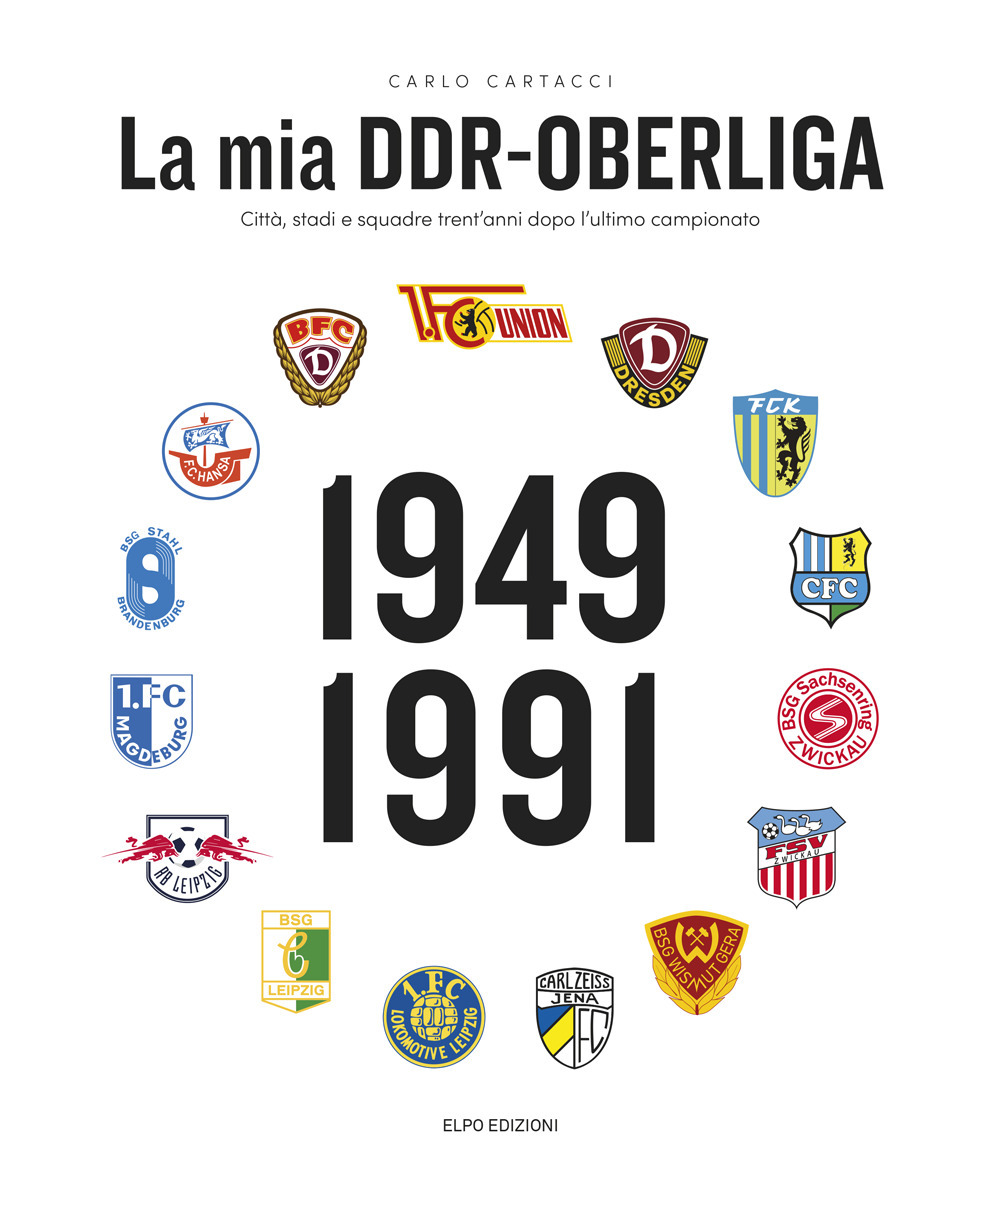 La mia DDR-Oberliga. Città, stadi e squadre trent'anni dopo l'ultimo campionato